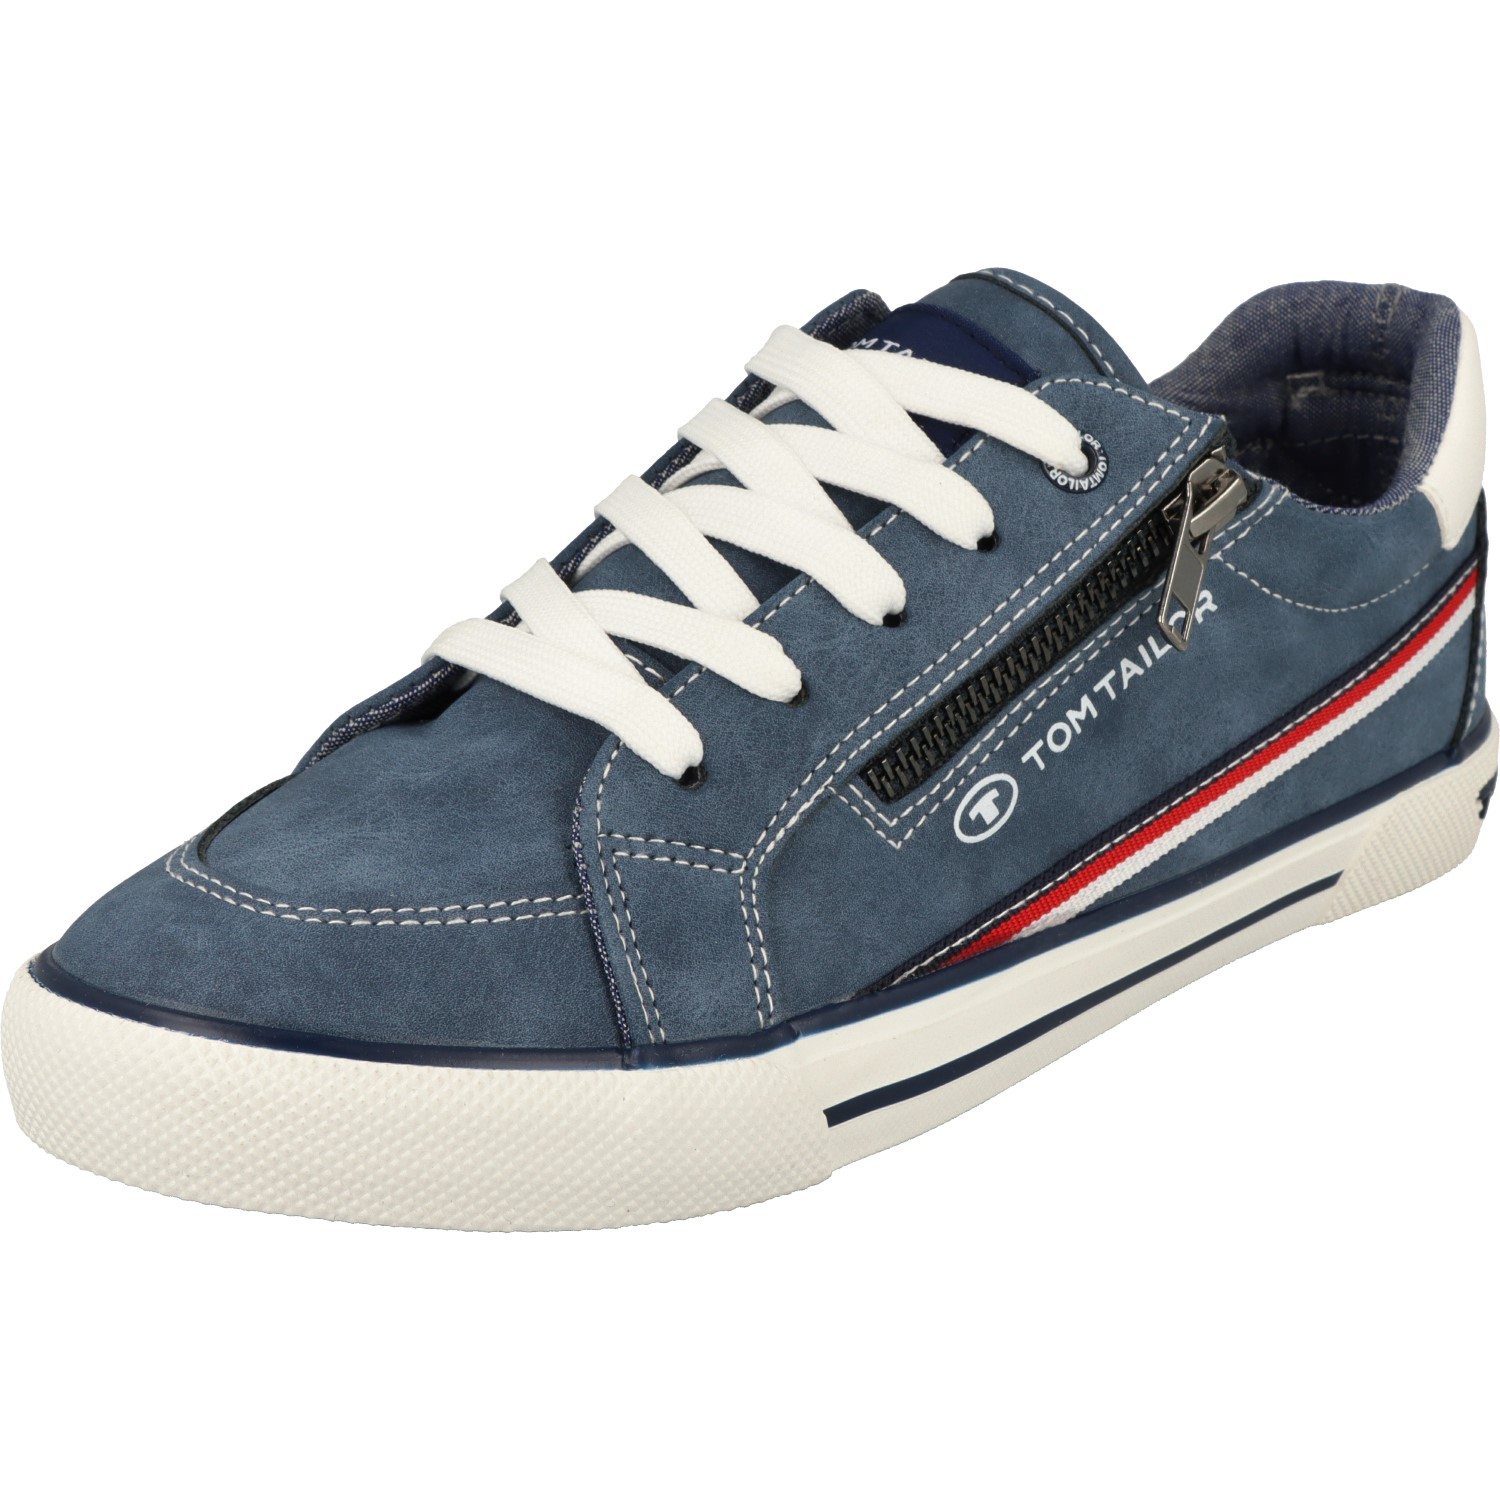 Tom Tailor Jungen Schuhe 5372904 Schnürschuhe Sneaker Halbschuhe Blau